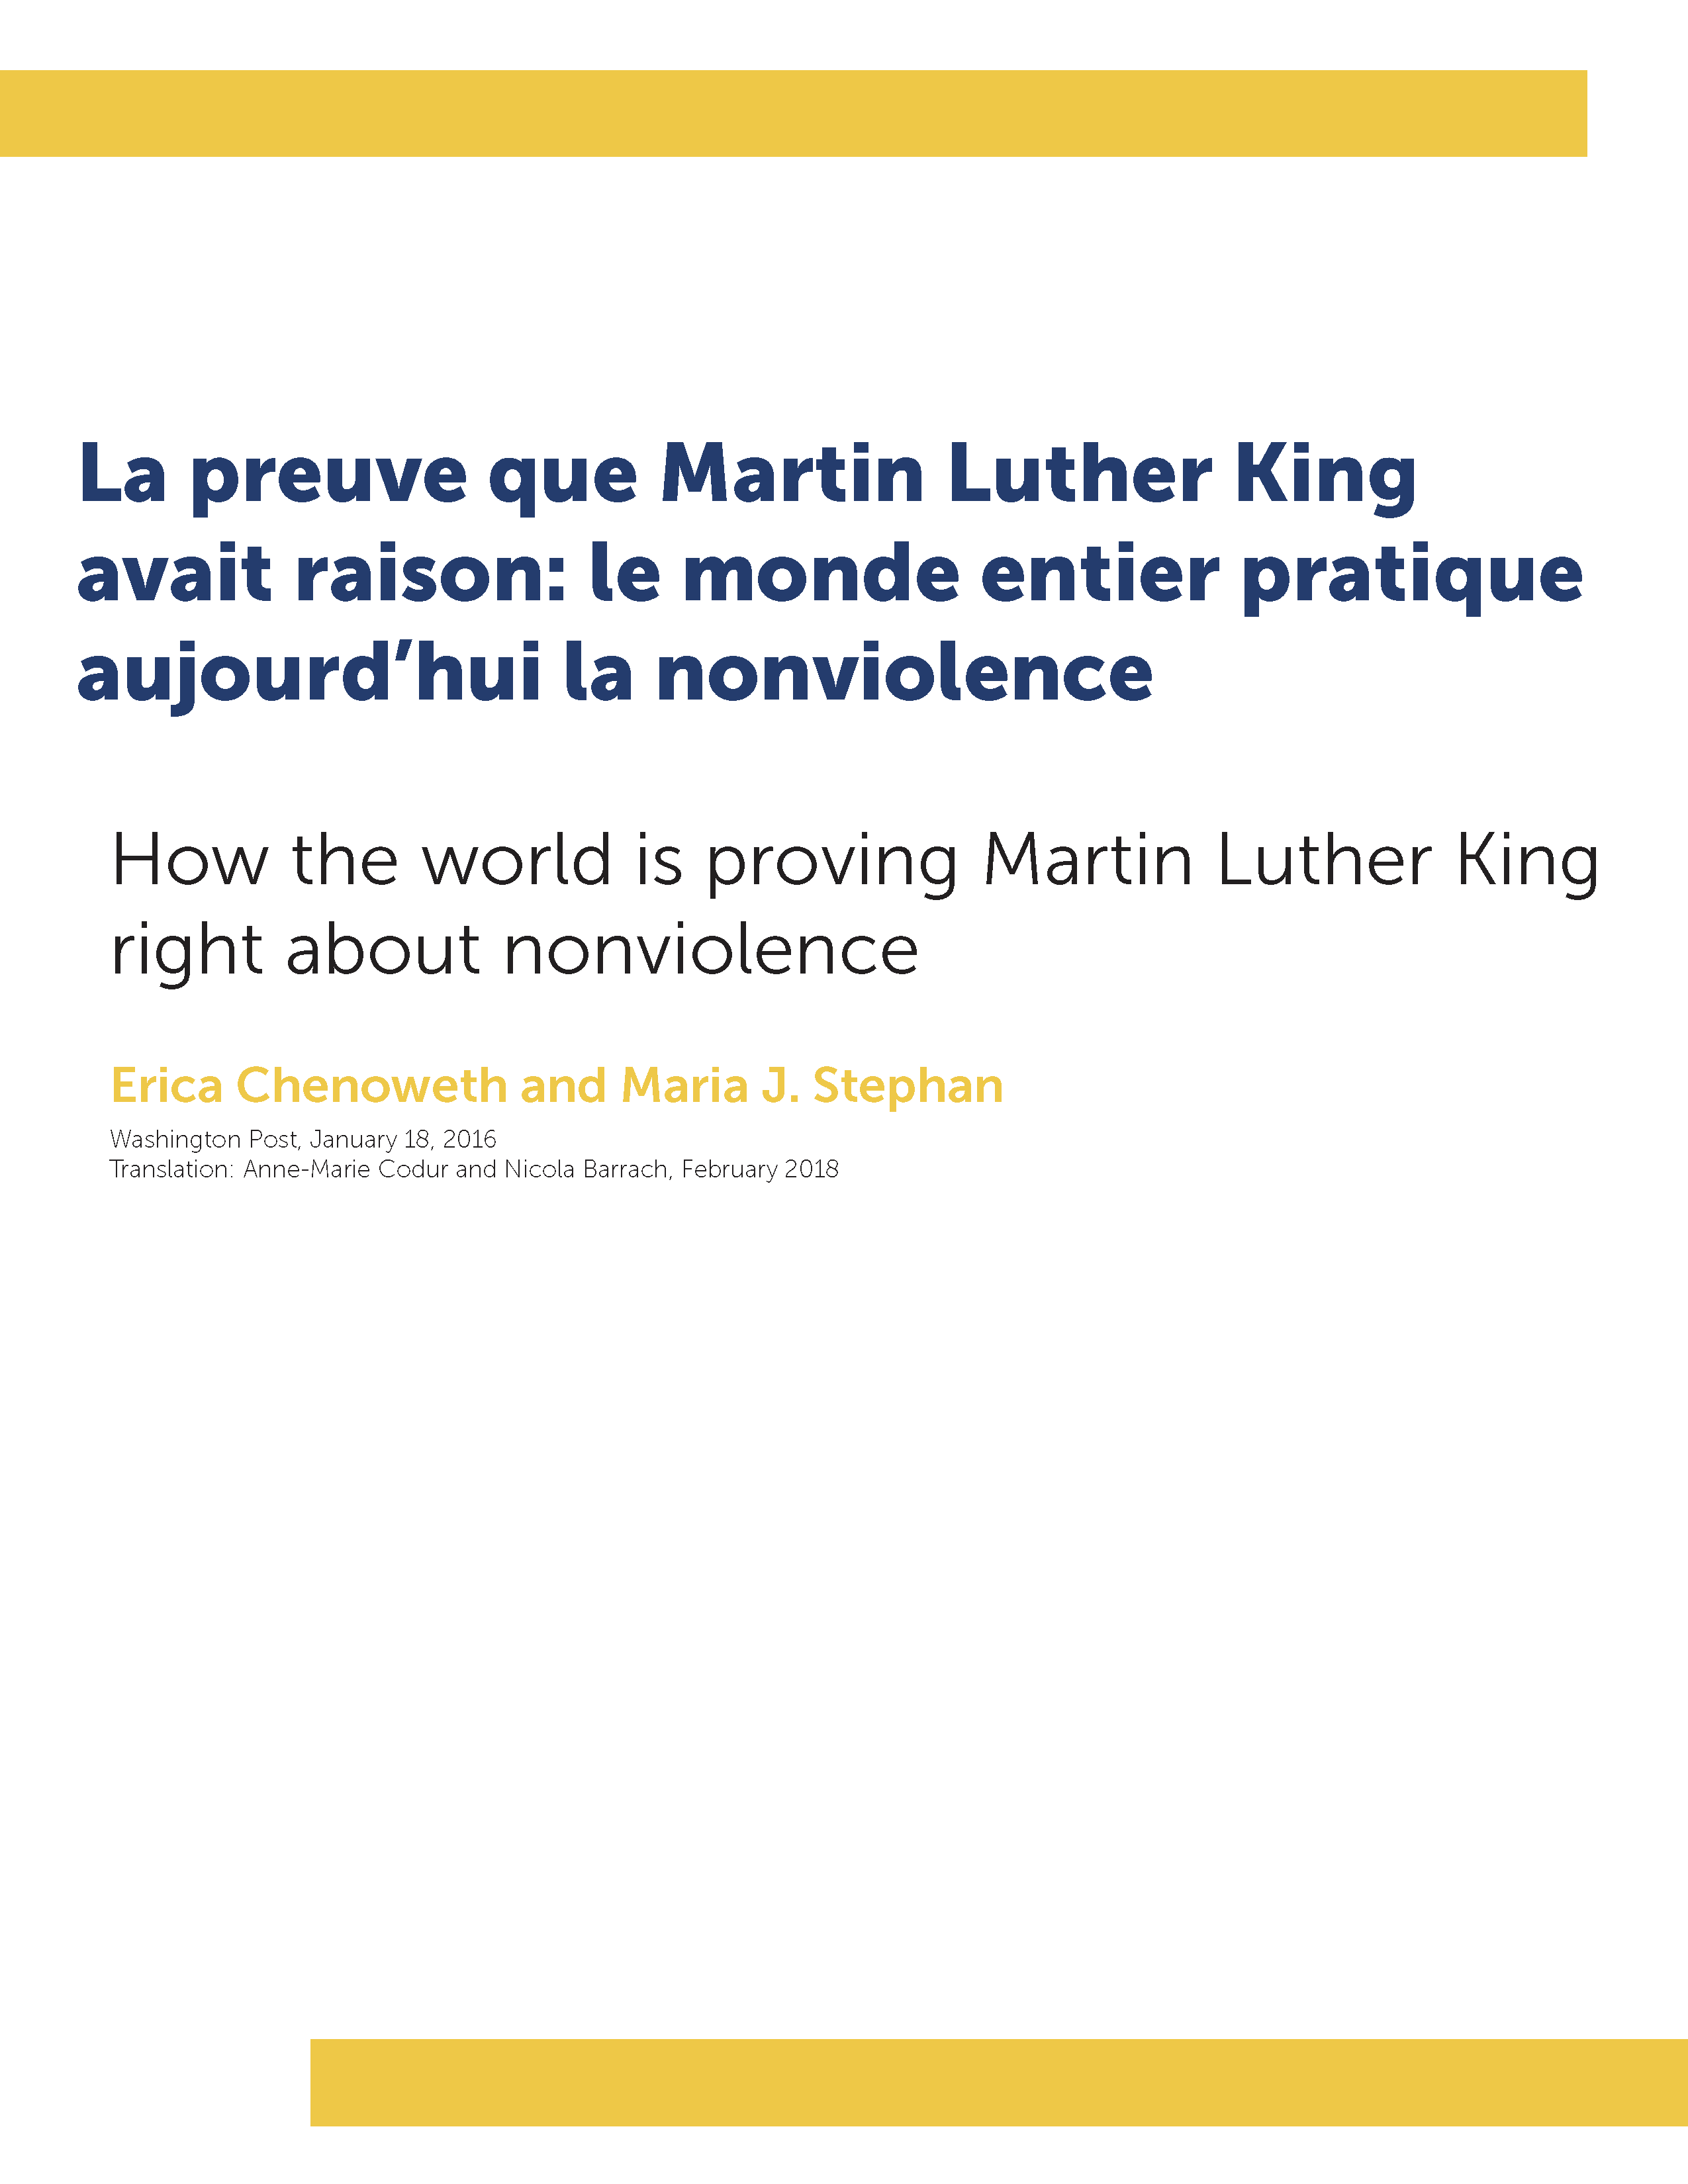 La preuve que Martin Luther King avait raison: le monde entier pratique aujourd’hui la nonviolence